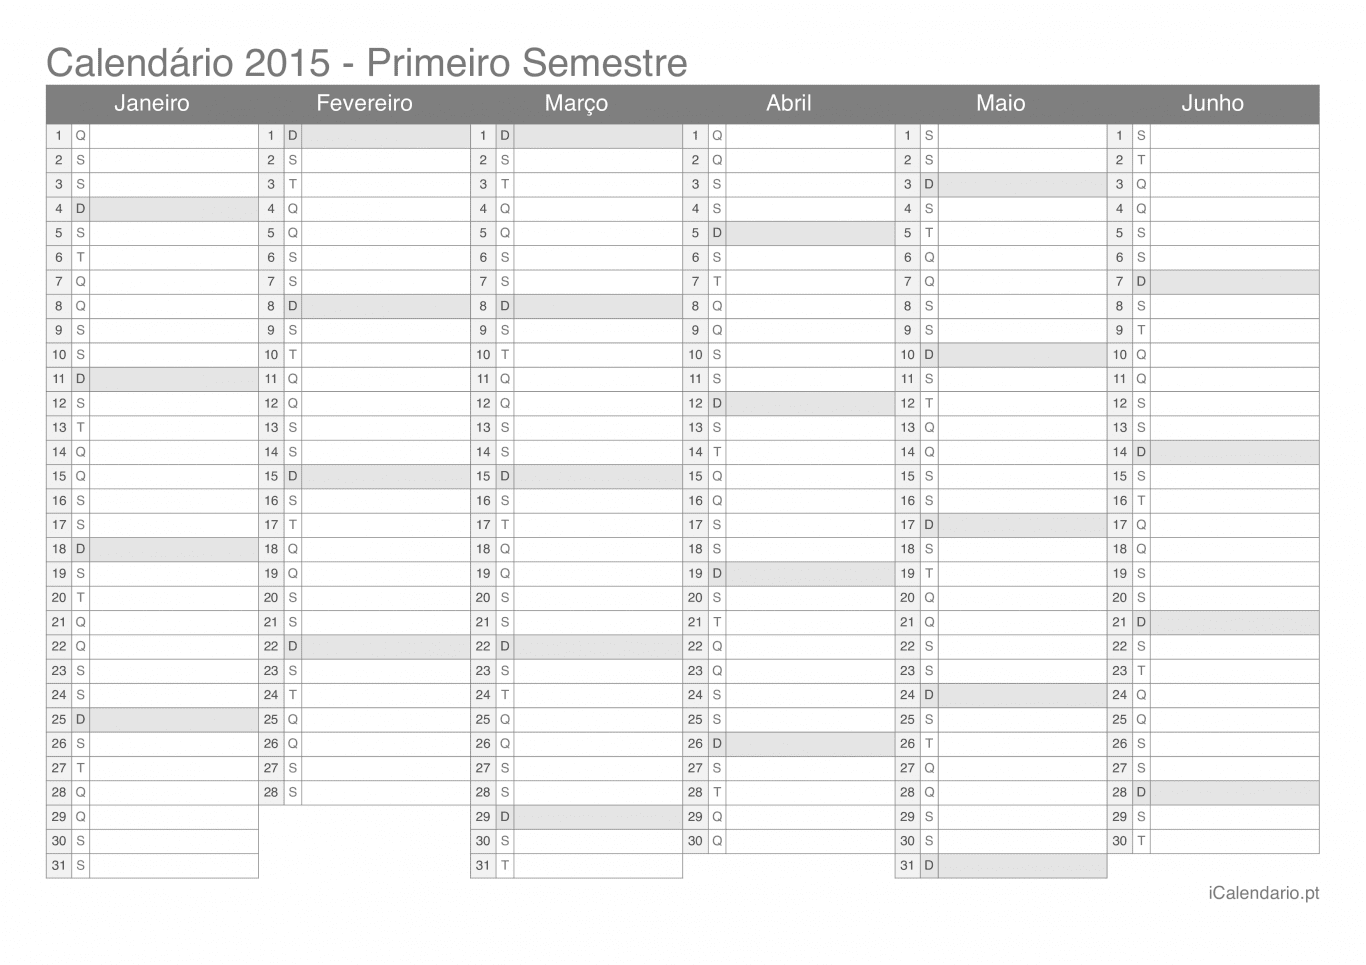 Calendário por semestre 2015